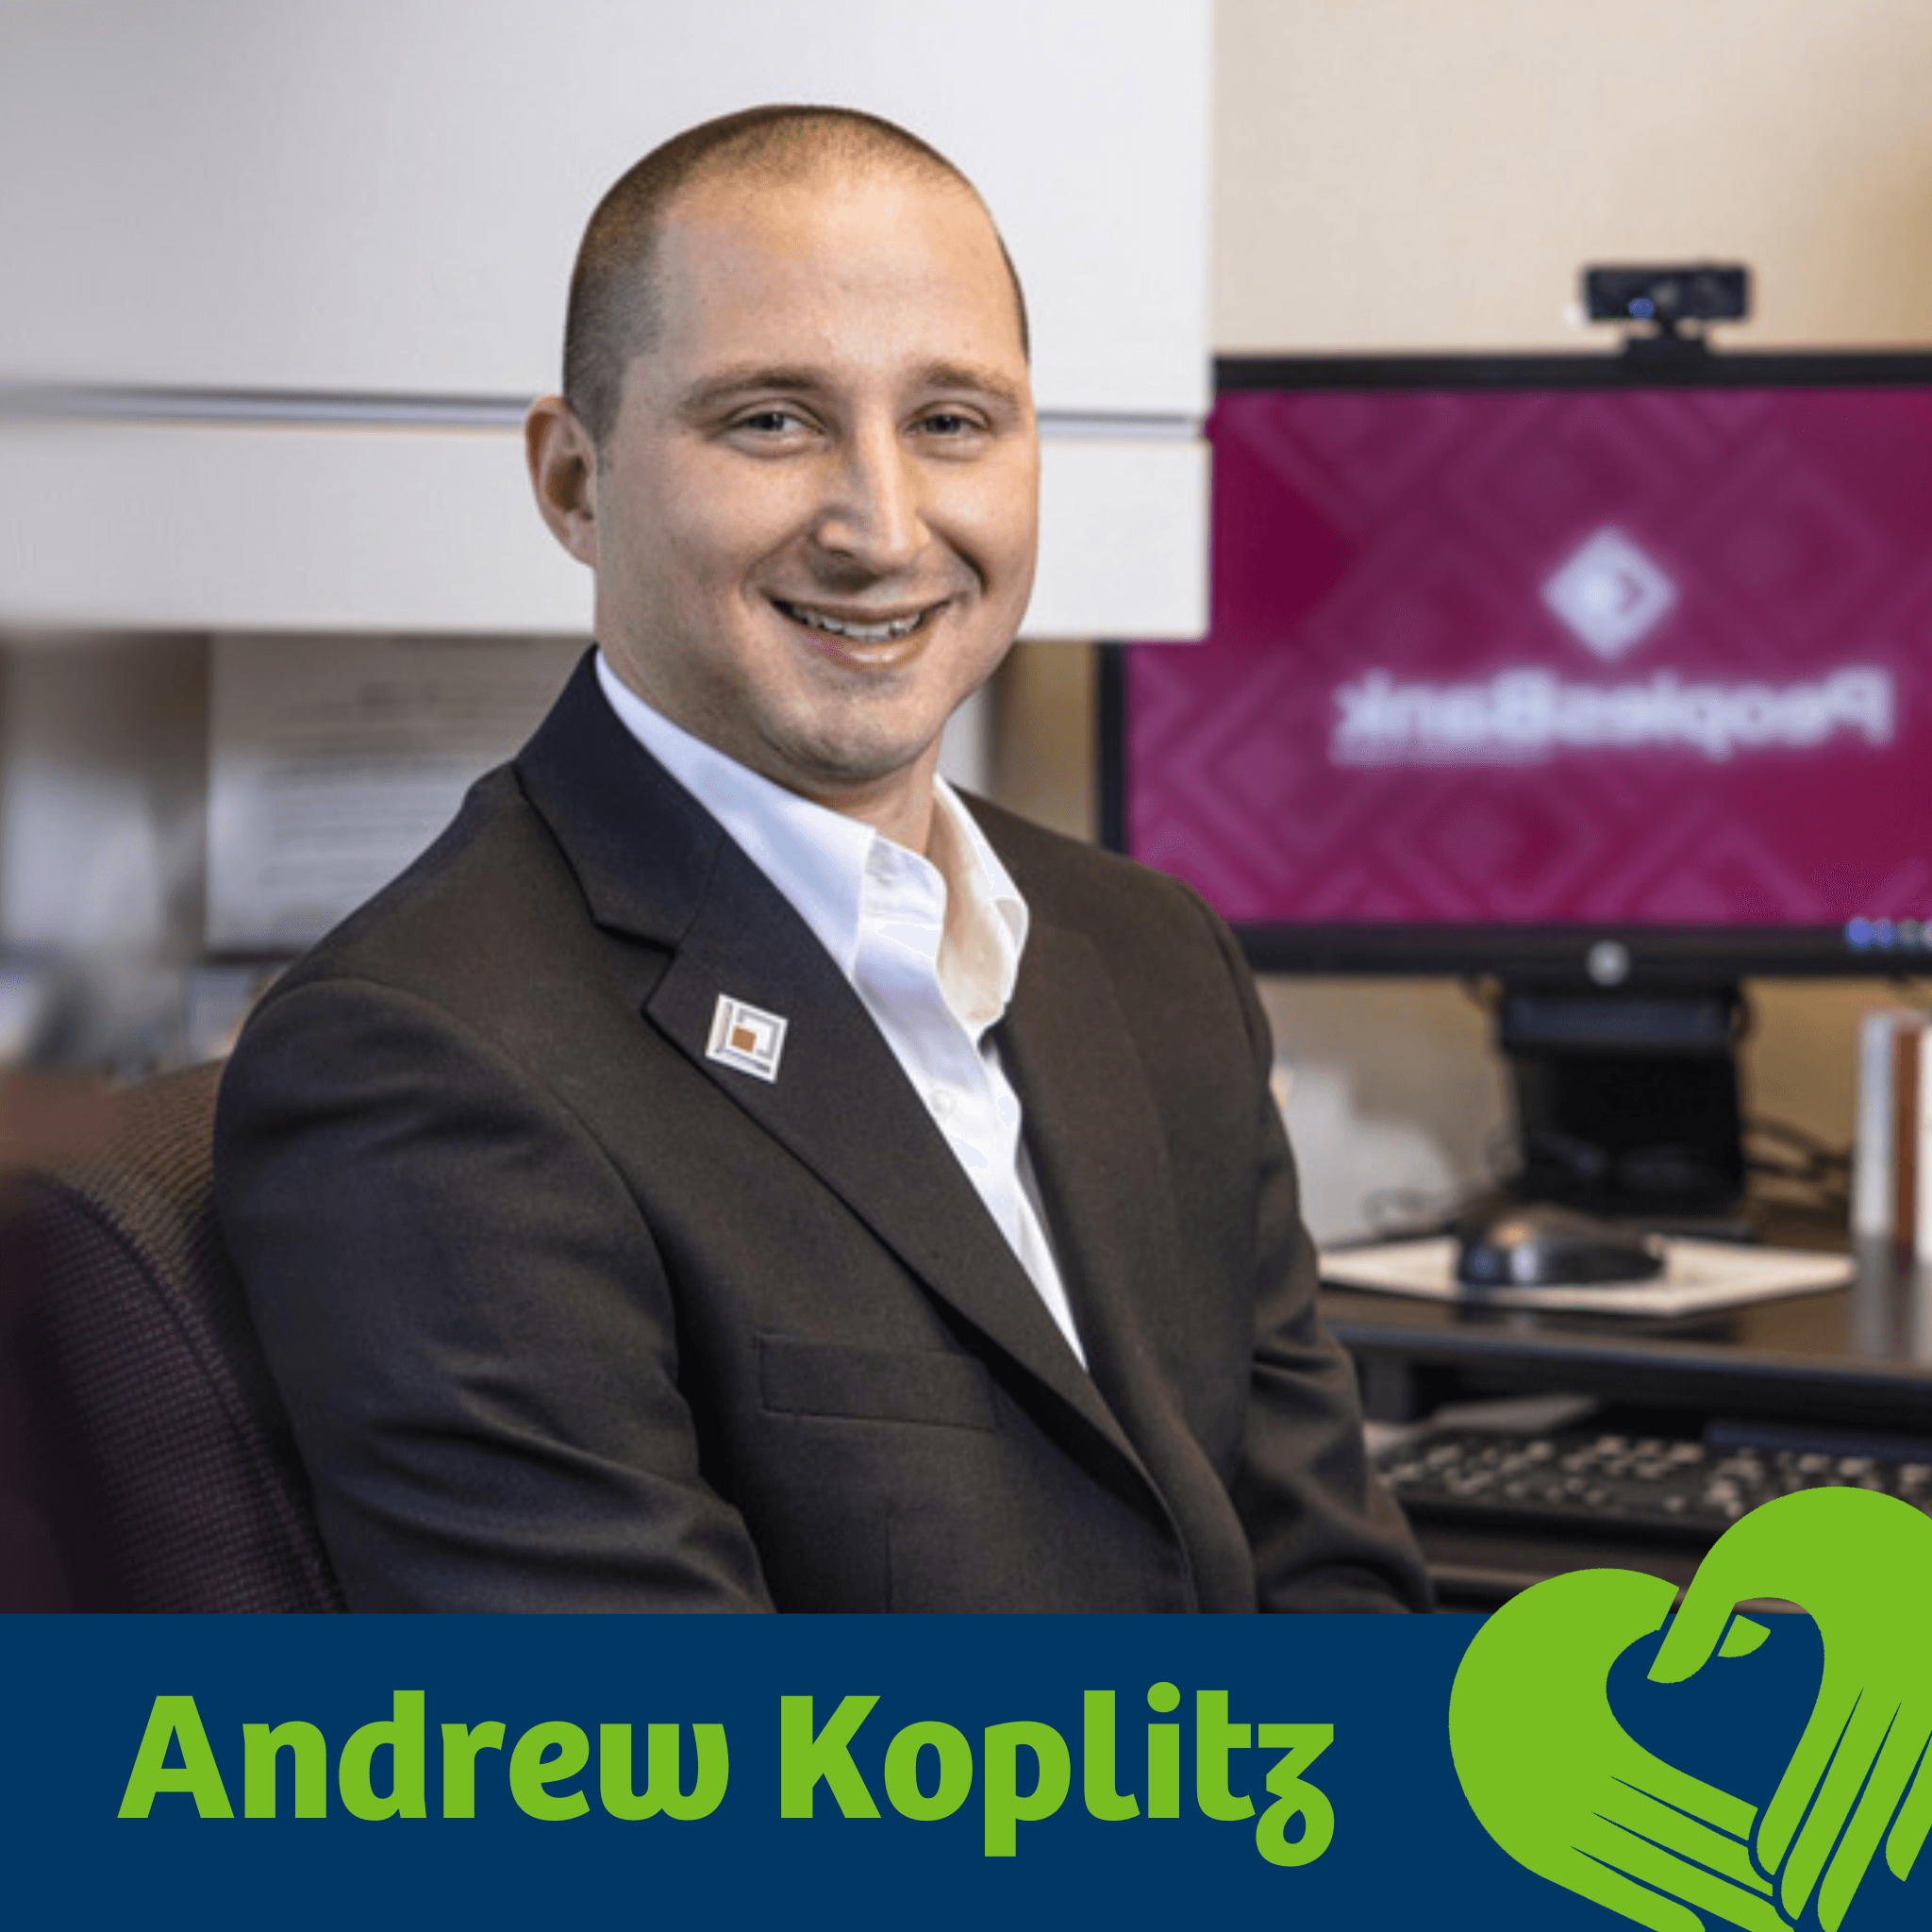 Andrew Koplitz